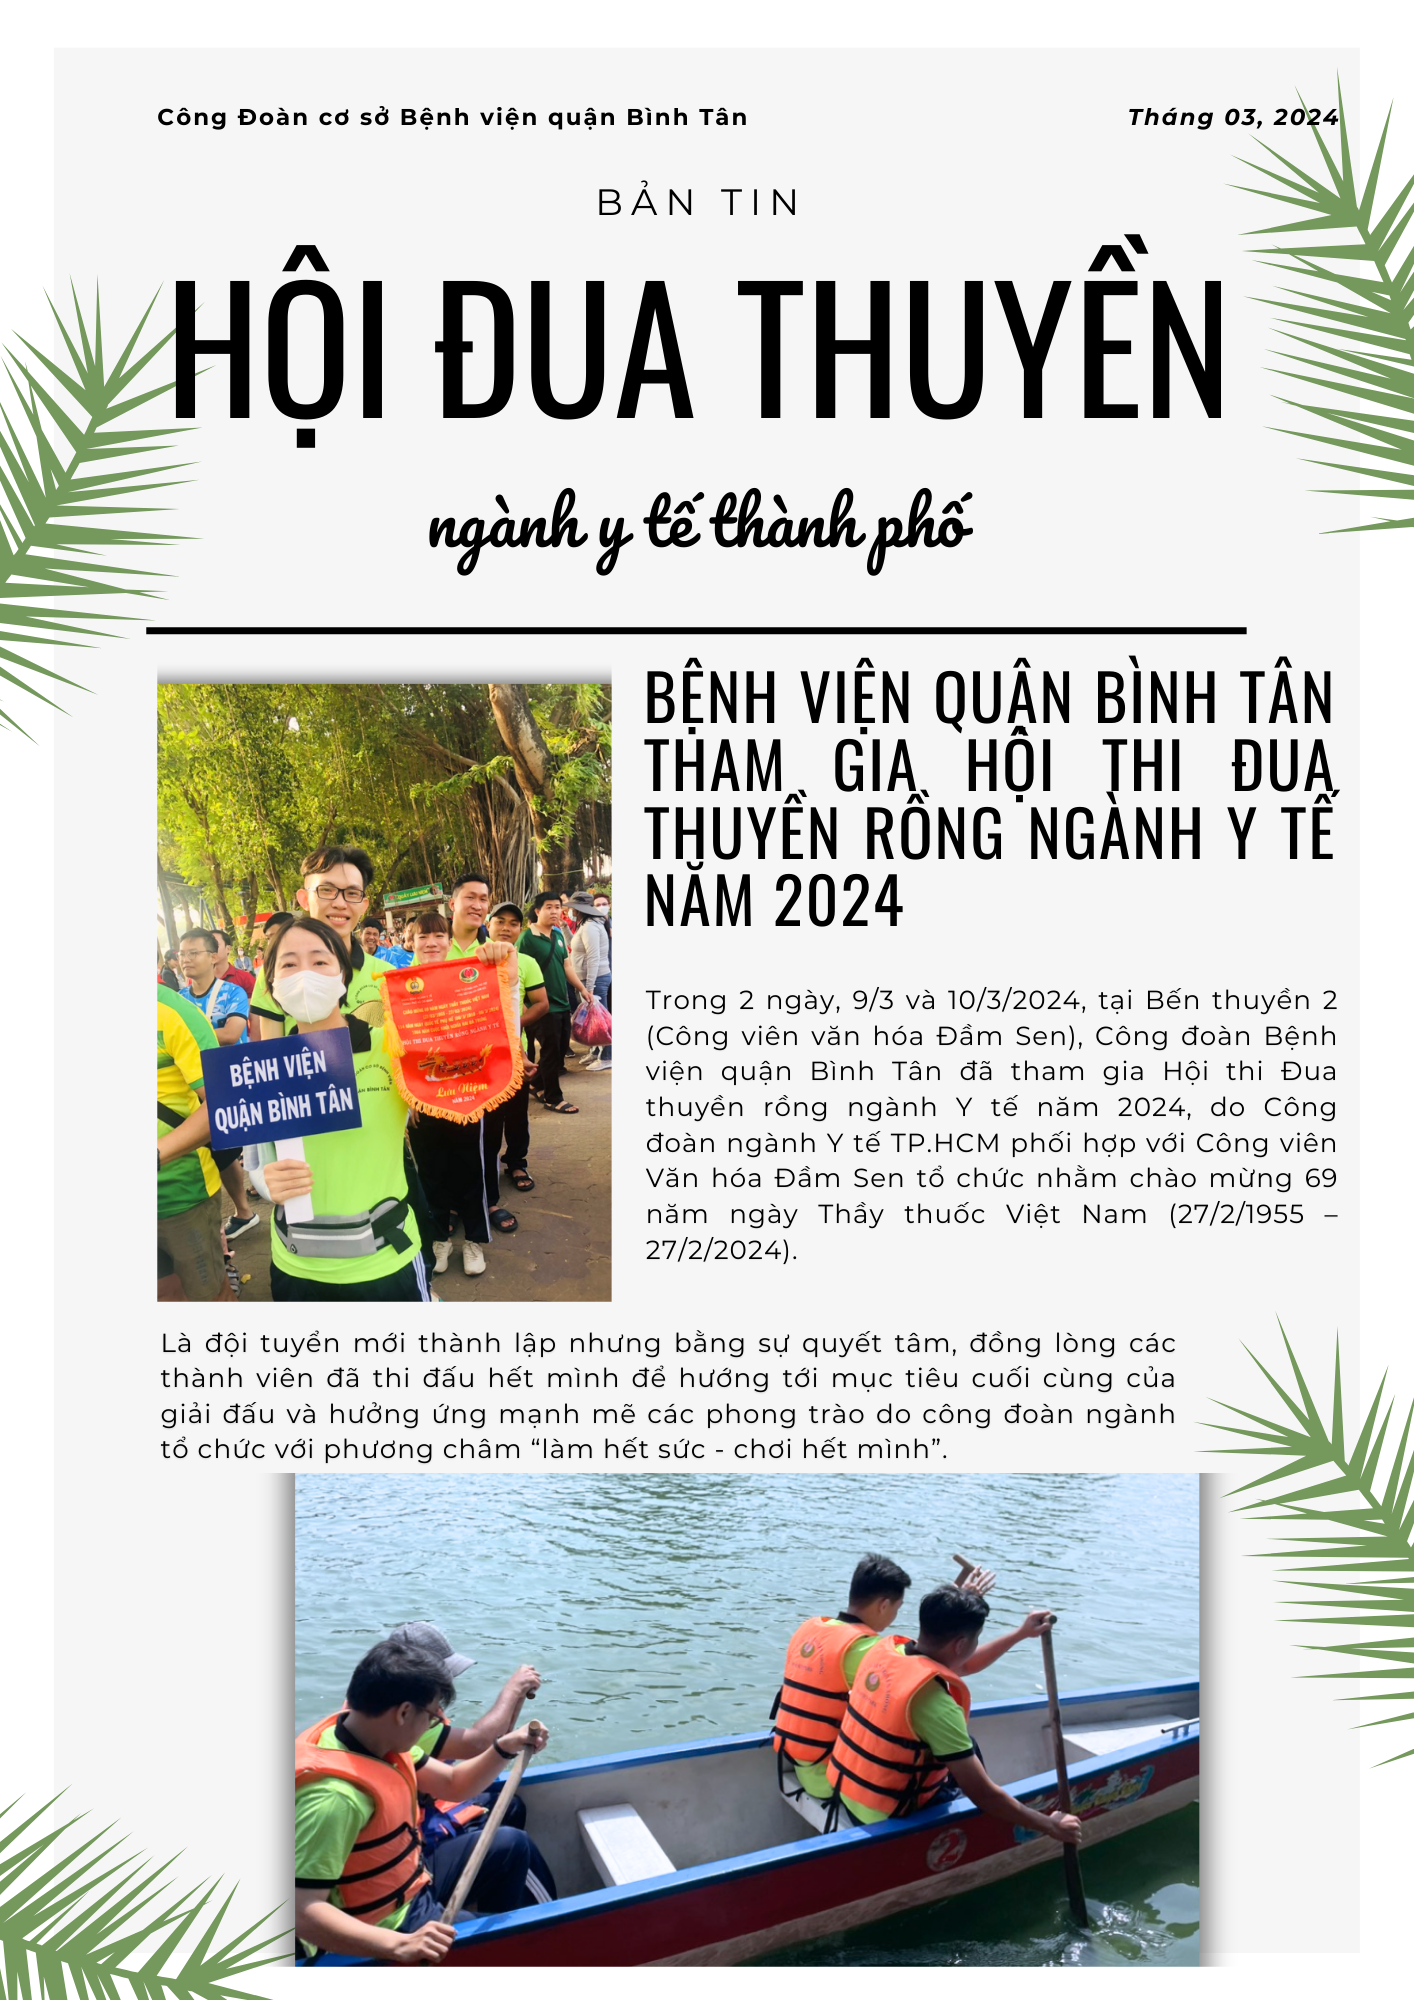 Bệnh viện quận Bình Tân tham gia Hội thi Đua thuyền rồng ngành Y tế năm 2024